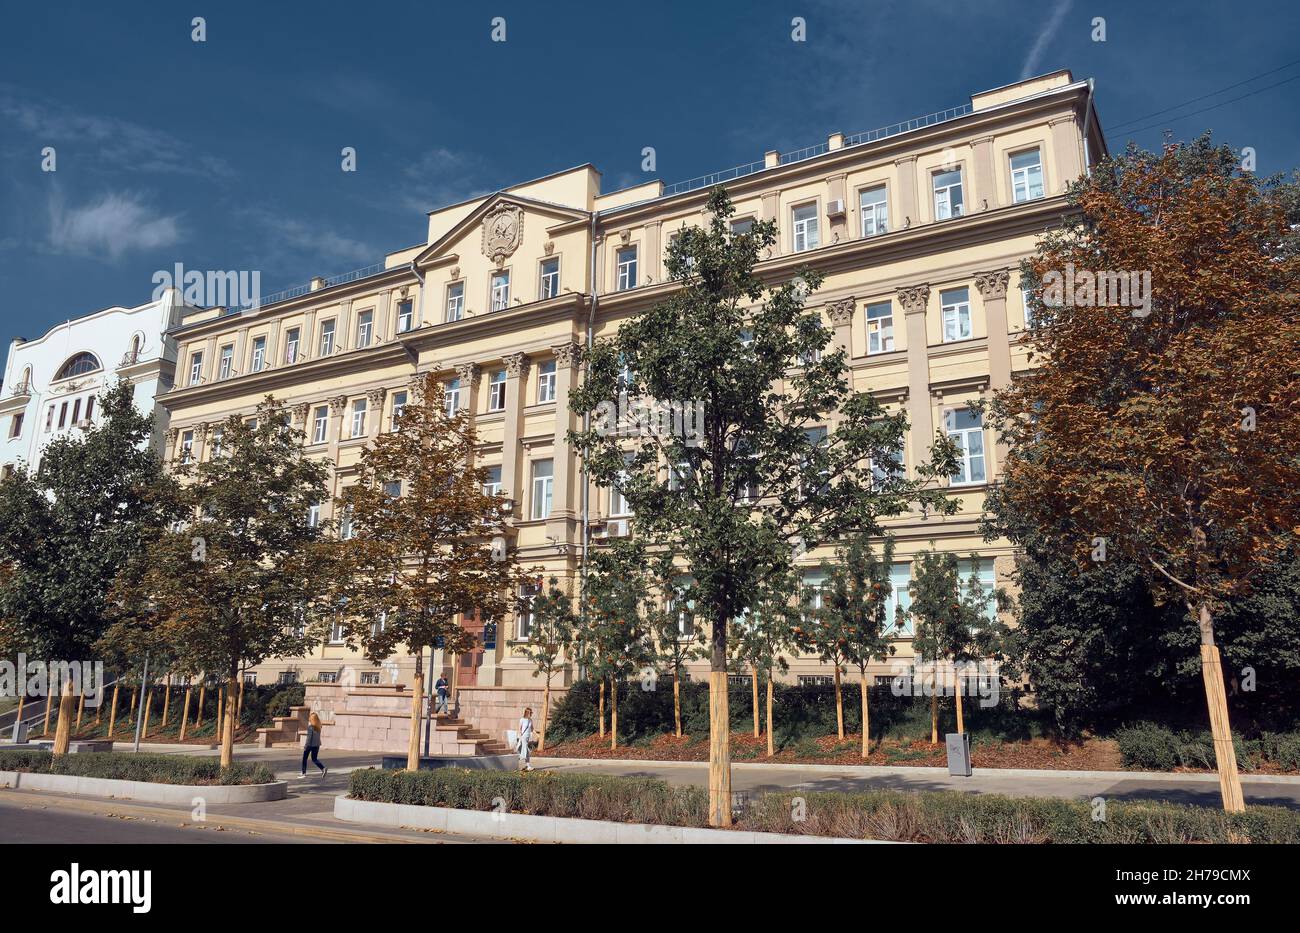 Empfangsgebäude des Innenministeriums der Russischen Föderation, Baujahr 1904, Wahrzeichen: Moskau, Russland - 13. September 2021 Stockfoto